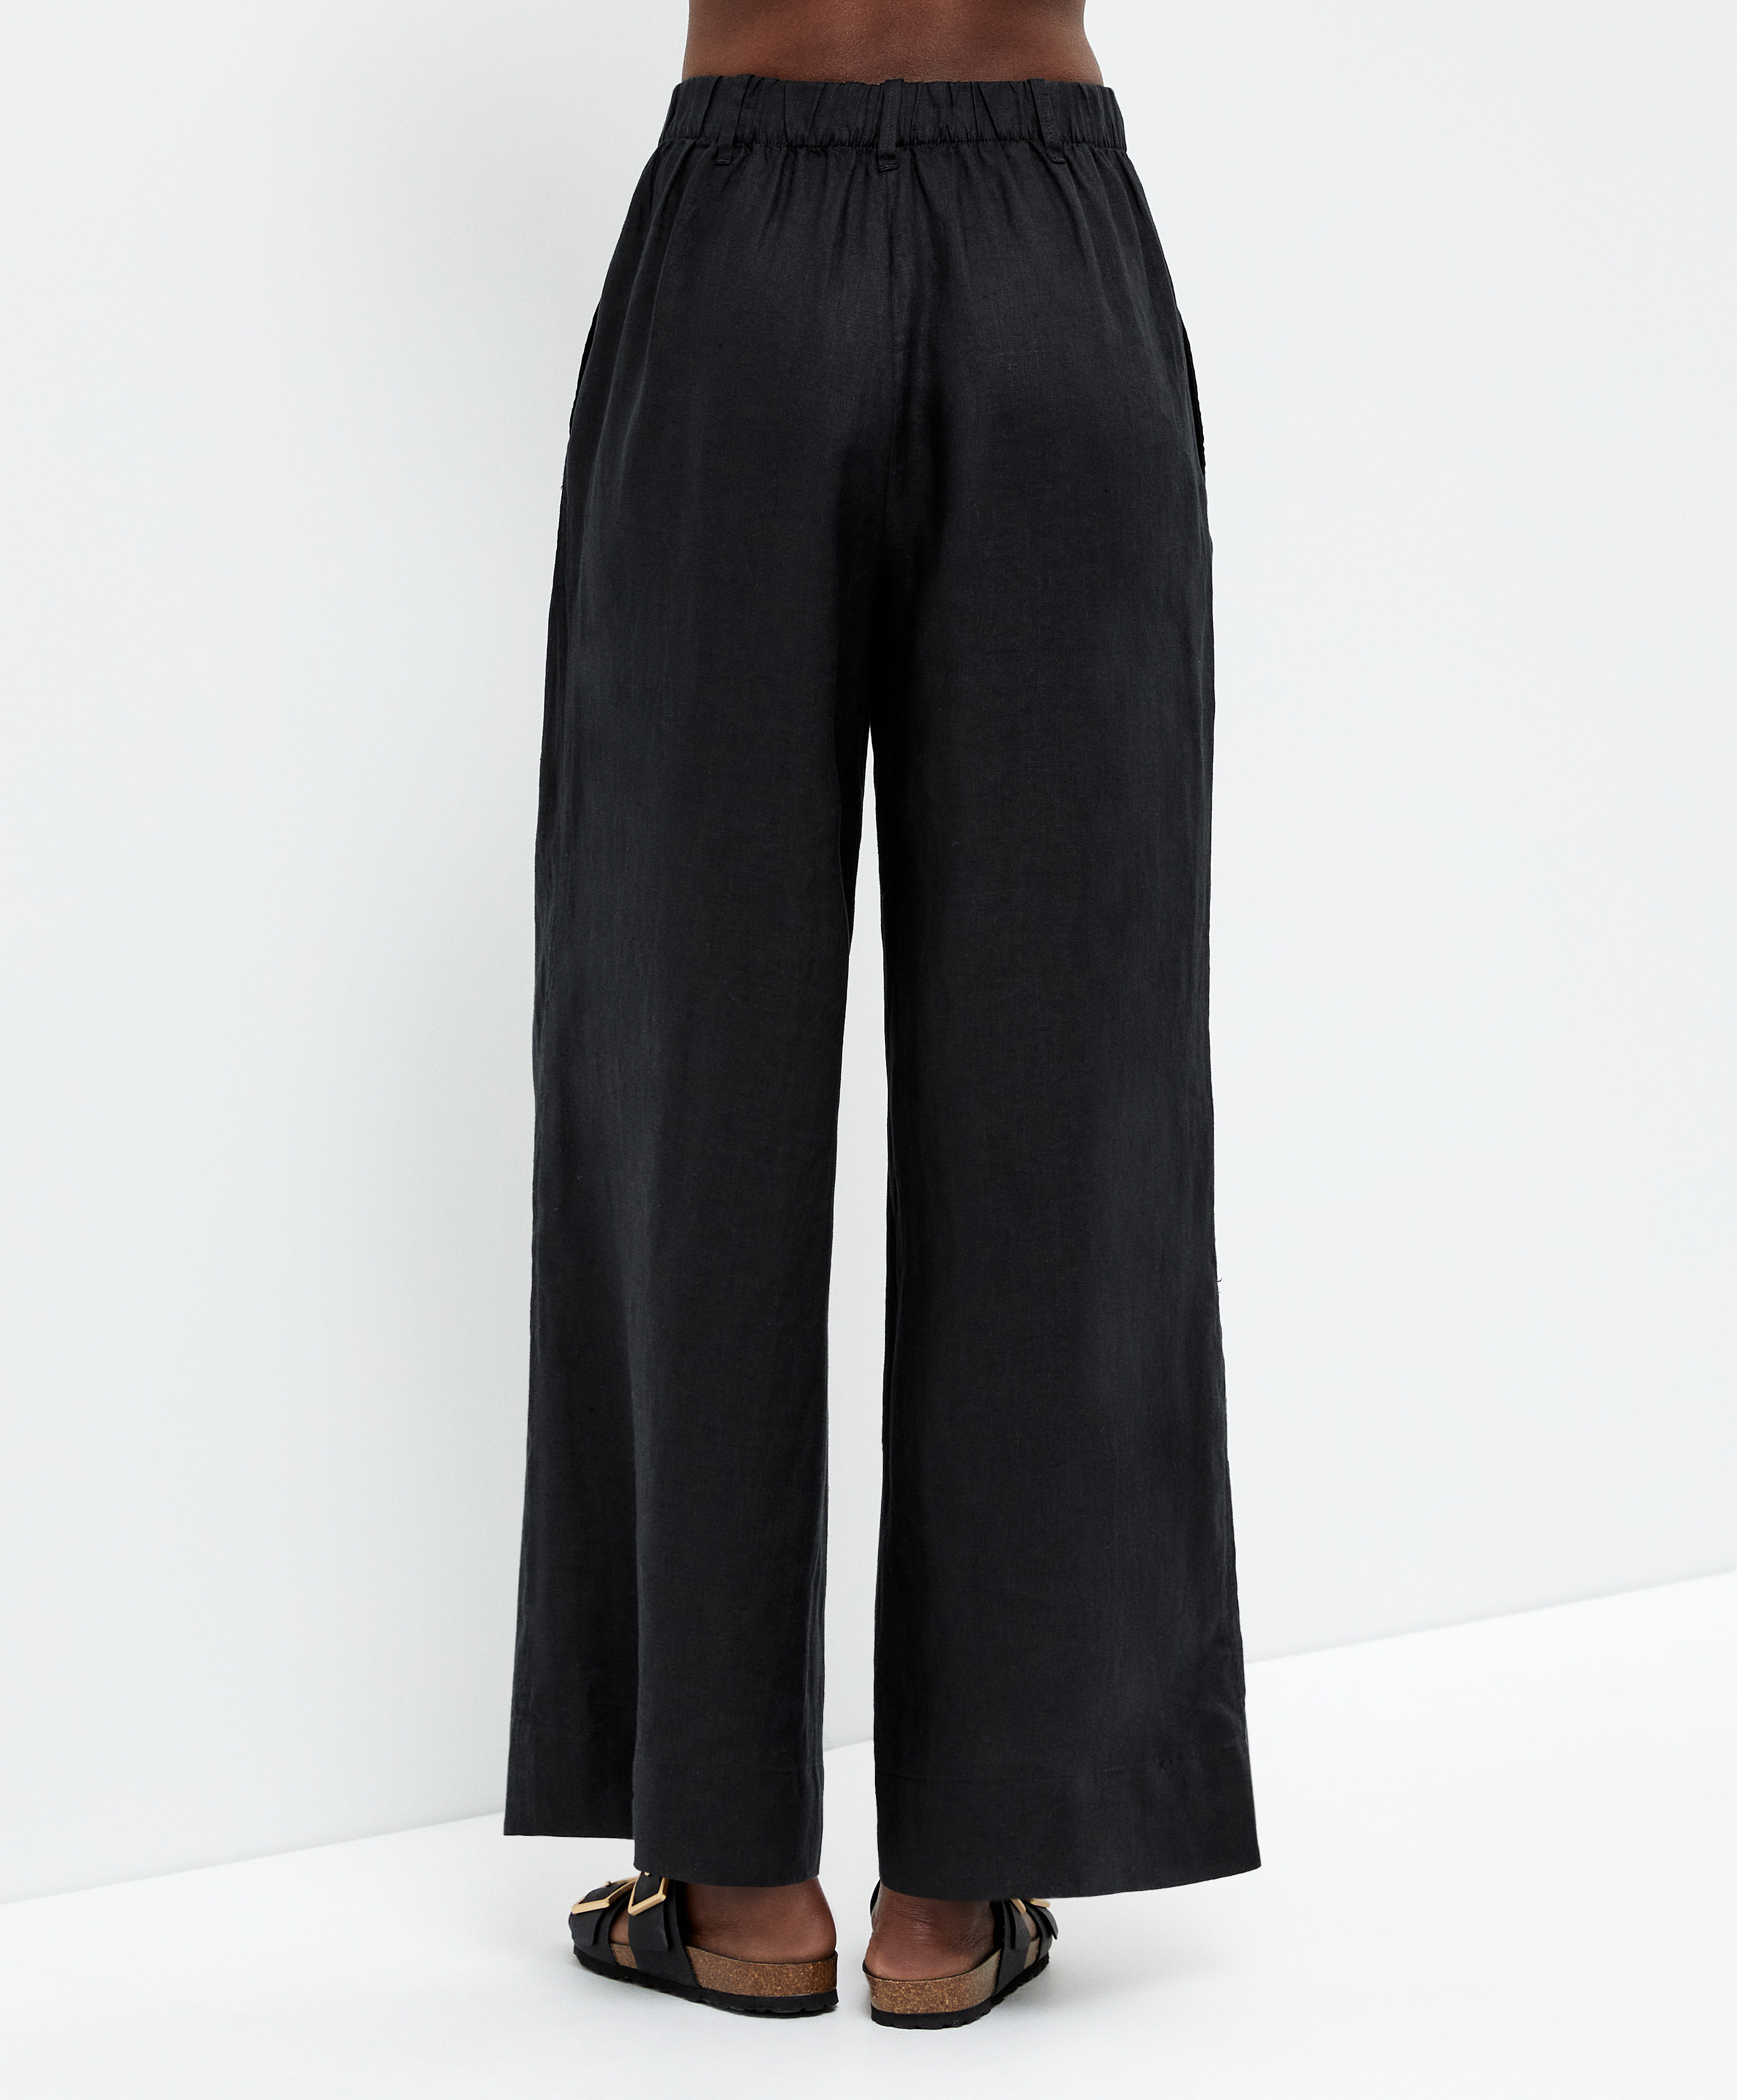 Pantalón wide leg 100% lino